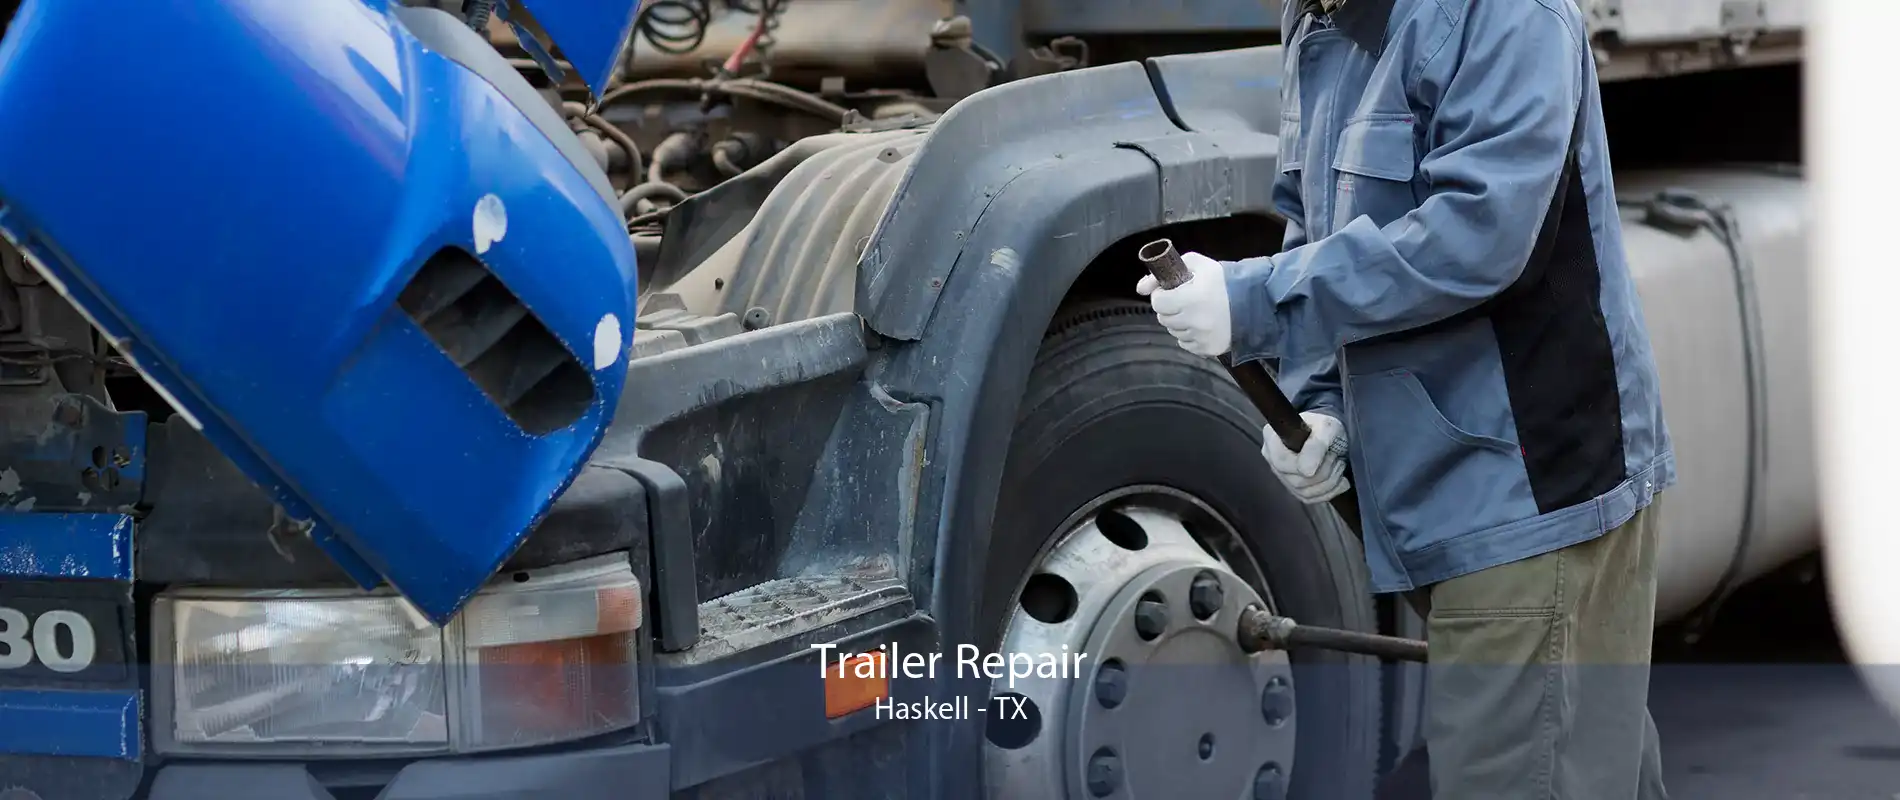 Trailer Repair Haskell - TX